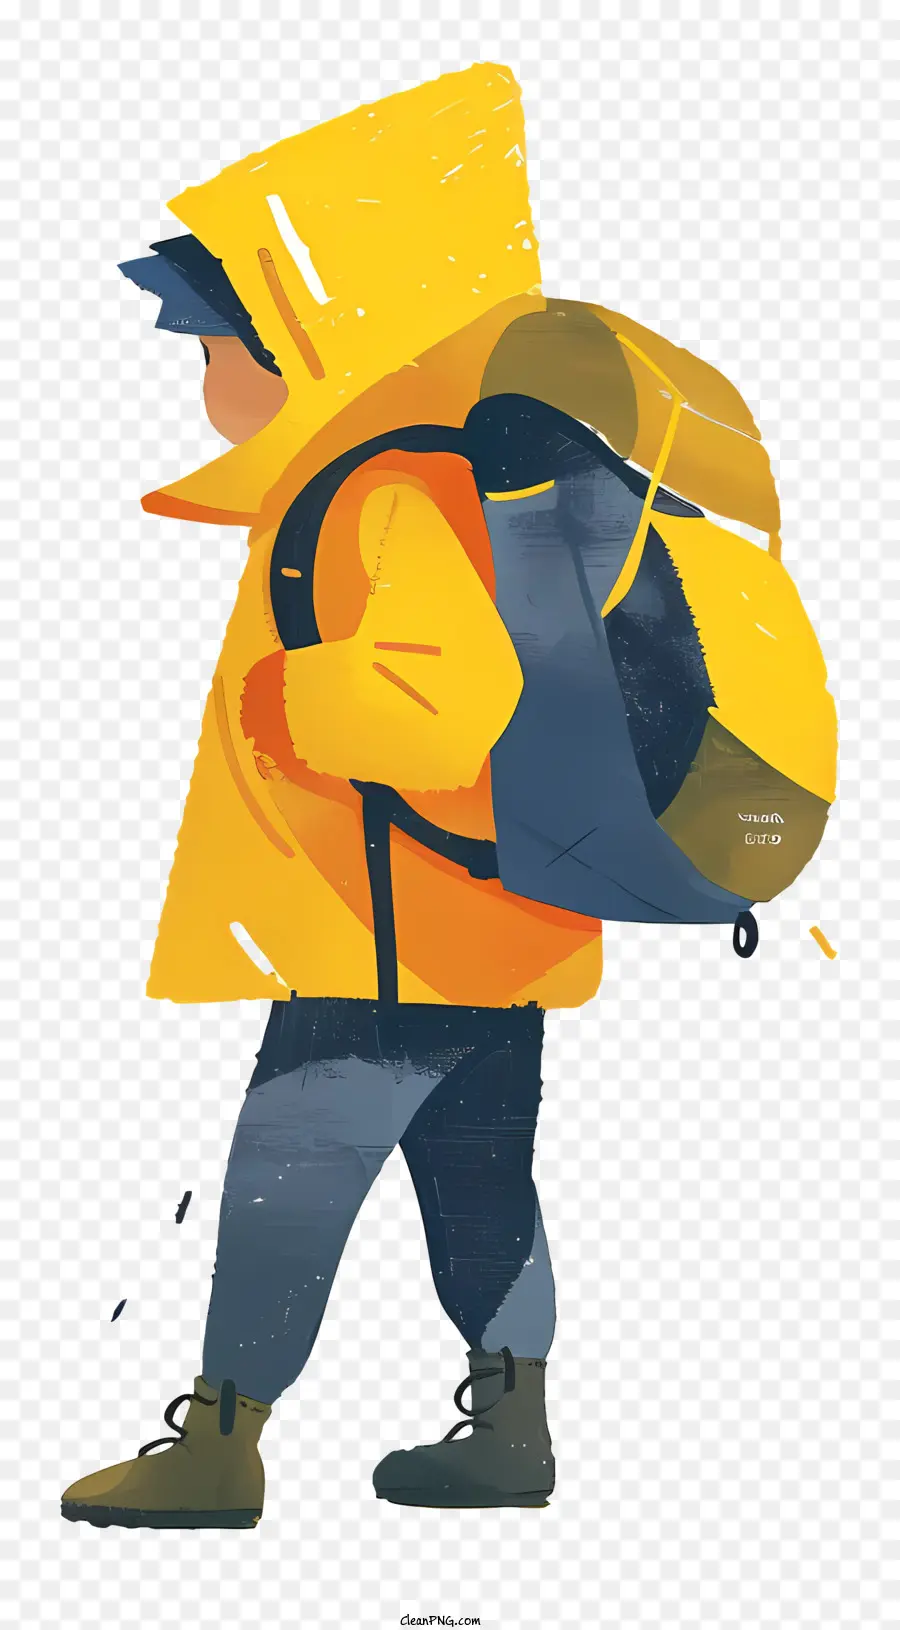 Junge mit Rucksack Cartoon Illustration Mann im gelben Regenmantelrucksack bestimmter Ausdruck - Mann im gelben Regenmantel mit einem Rucksack, der weggeht